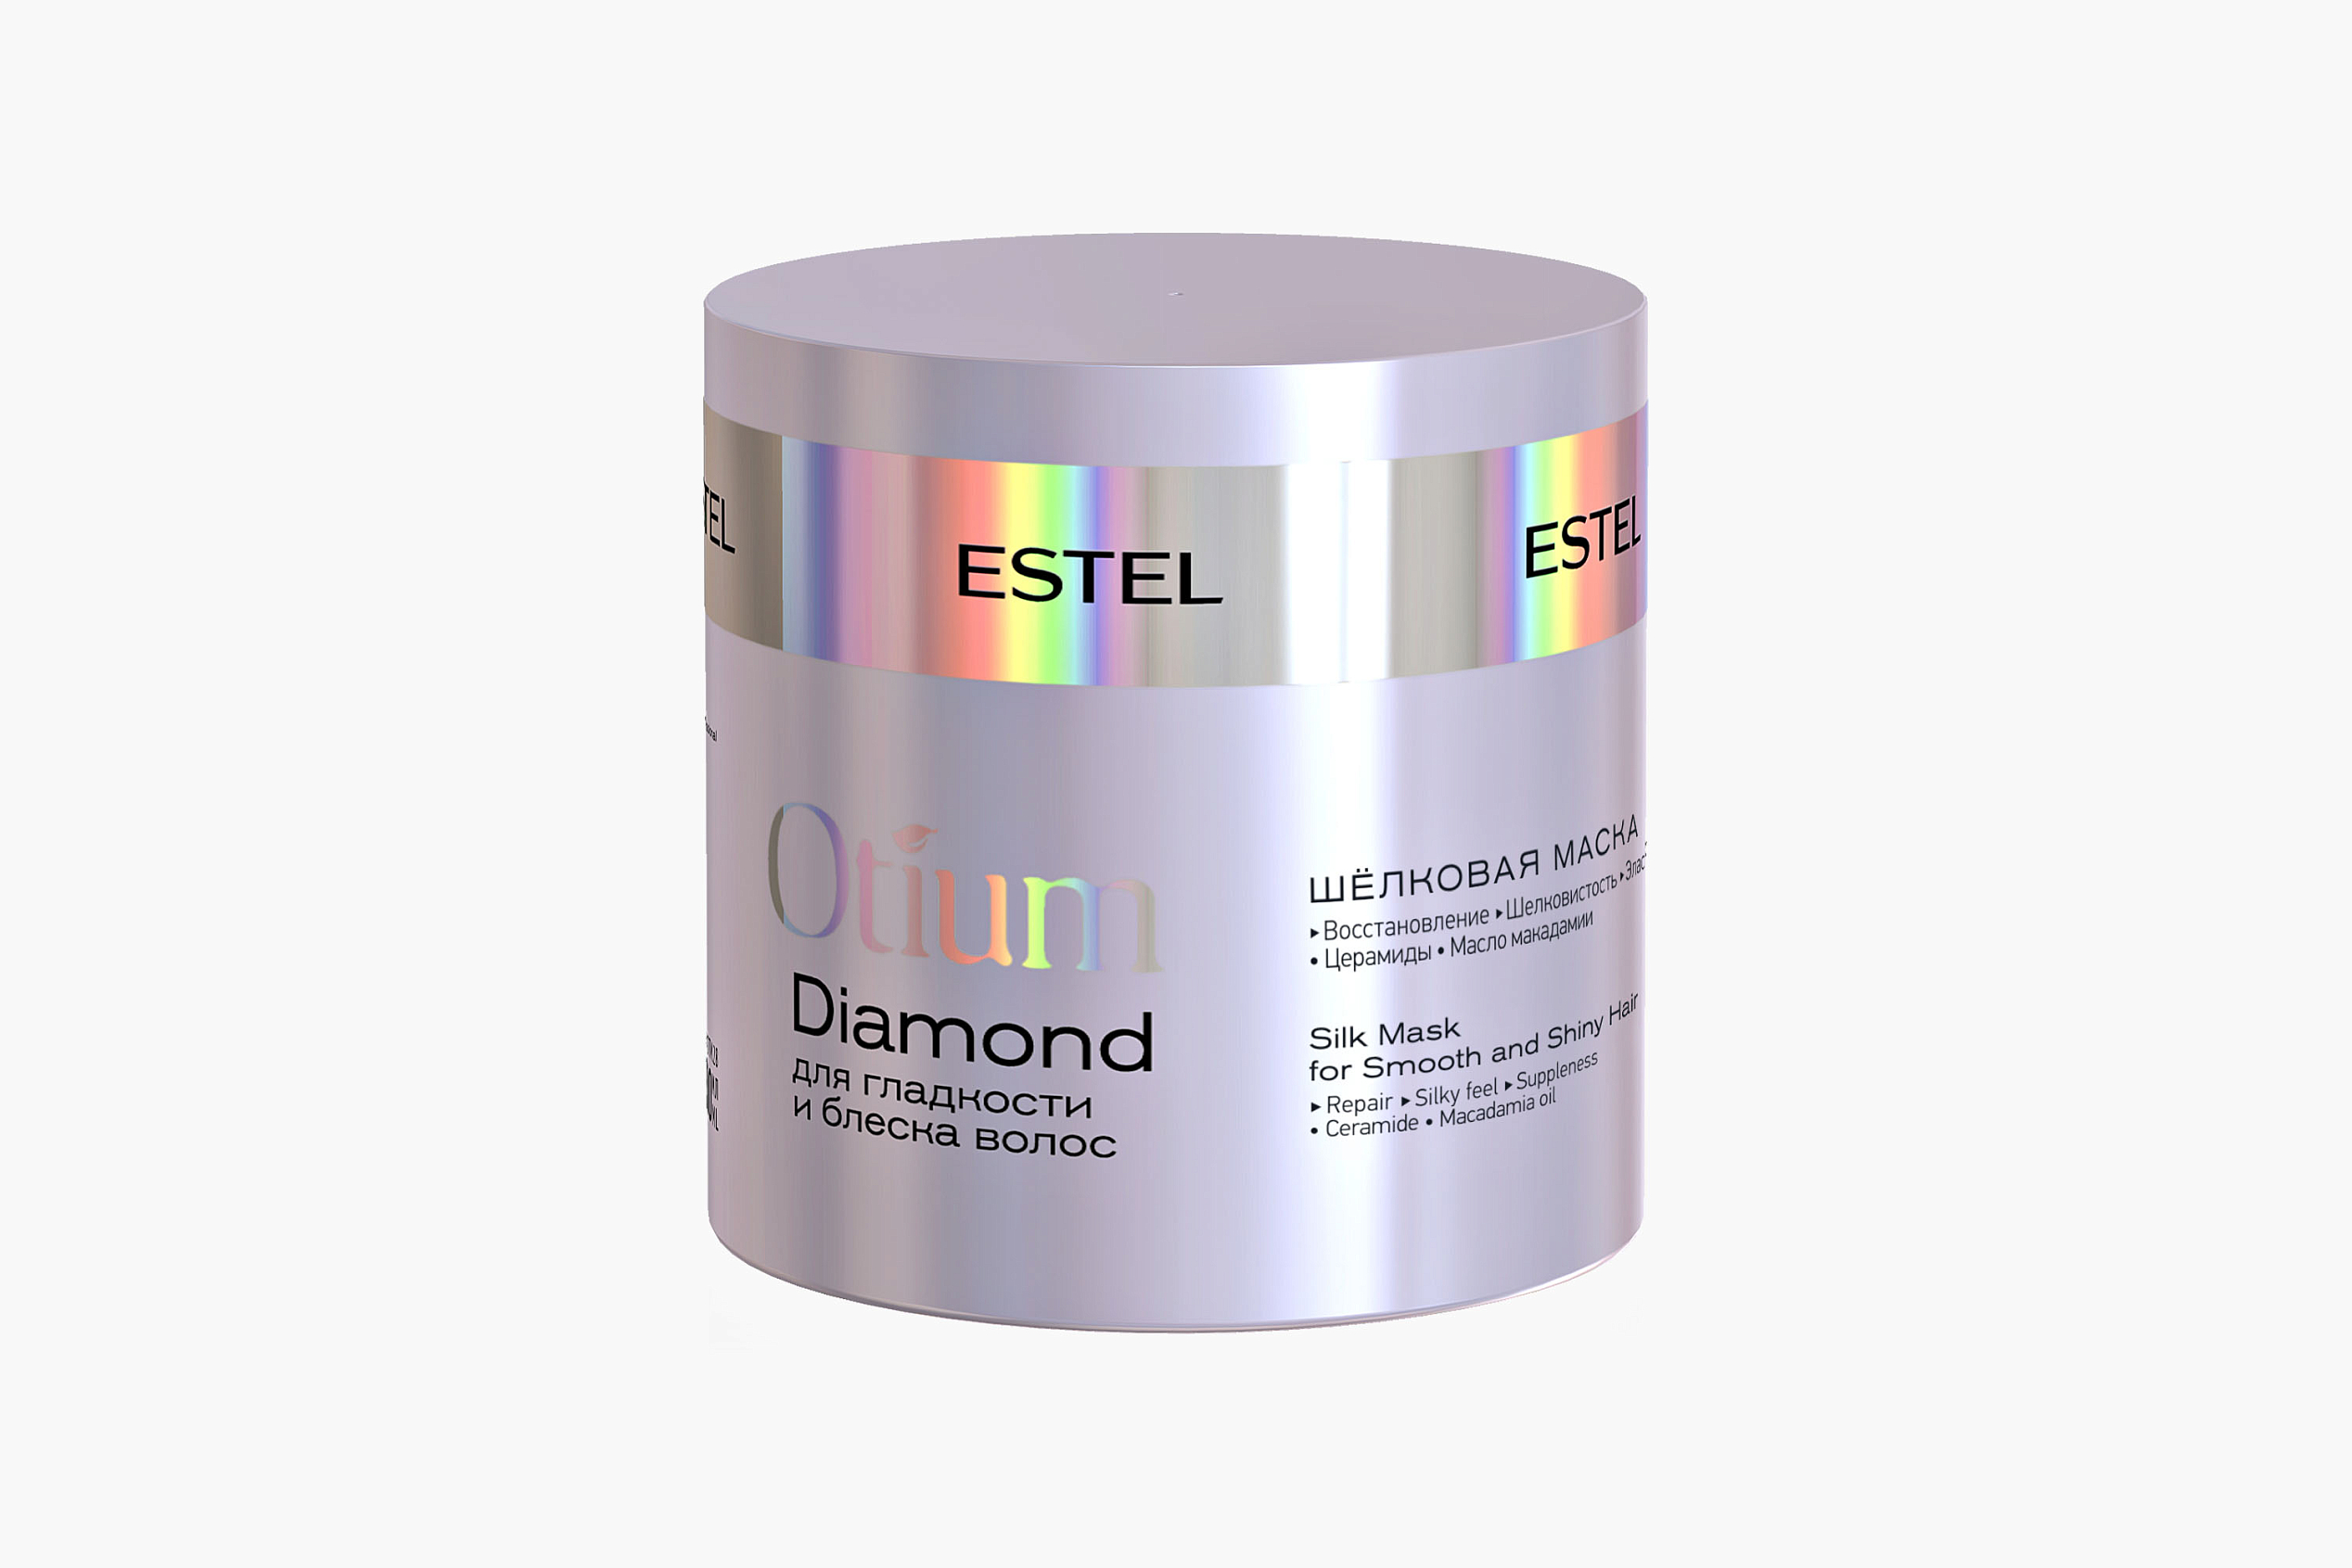 Estel Professional Otium Diamond фото 1